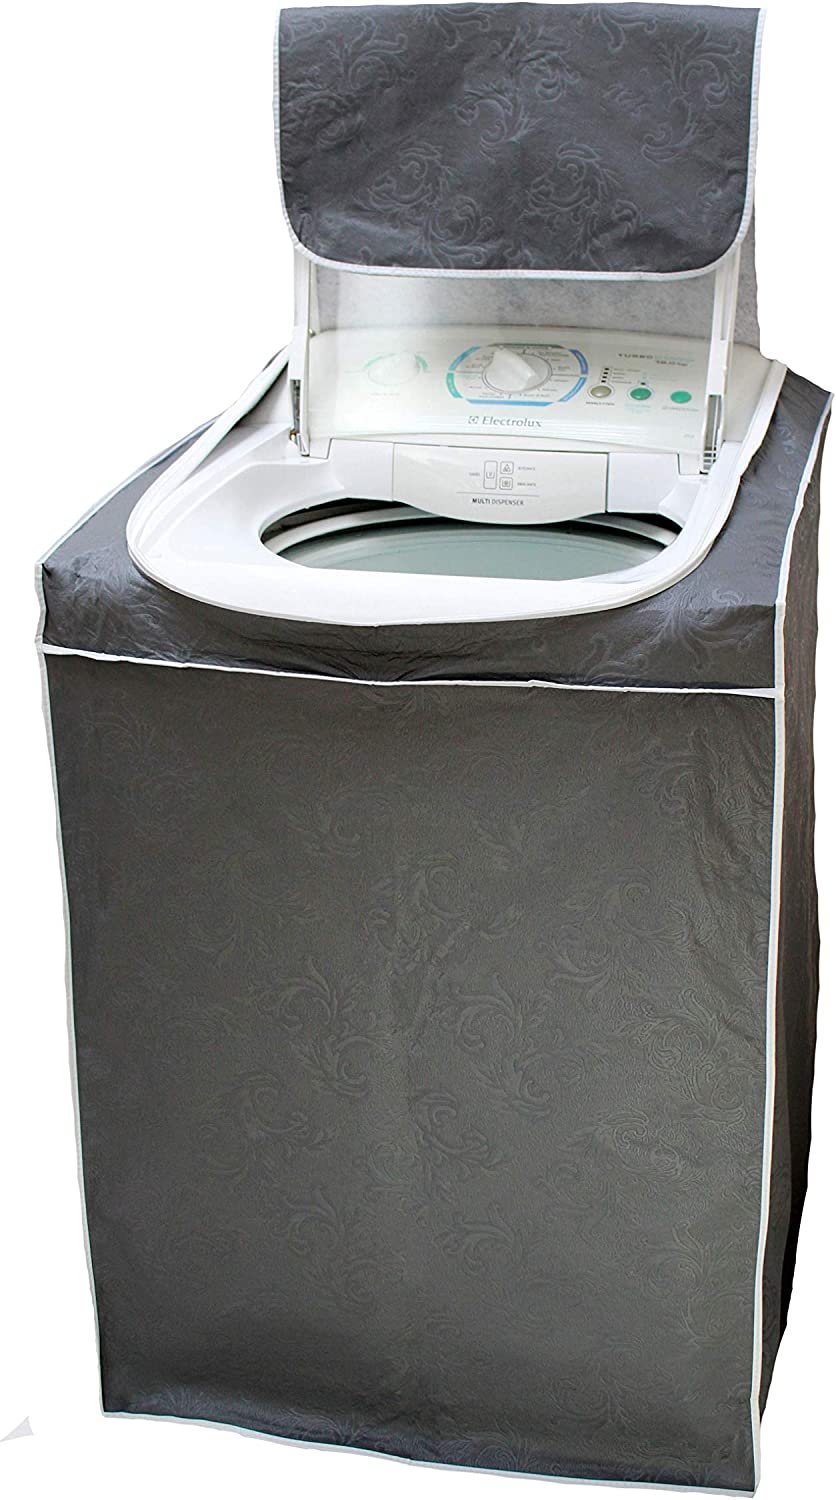 Capa para Máquina de Lavar Com Zíper - CINZA - Tam. M - Todas 5kg a 14kg - Electrolux Brastemp Consu